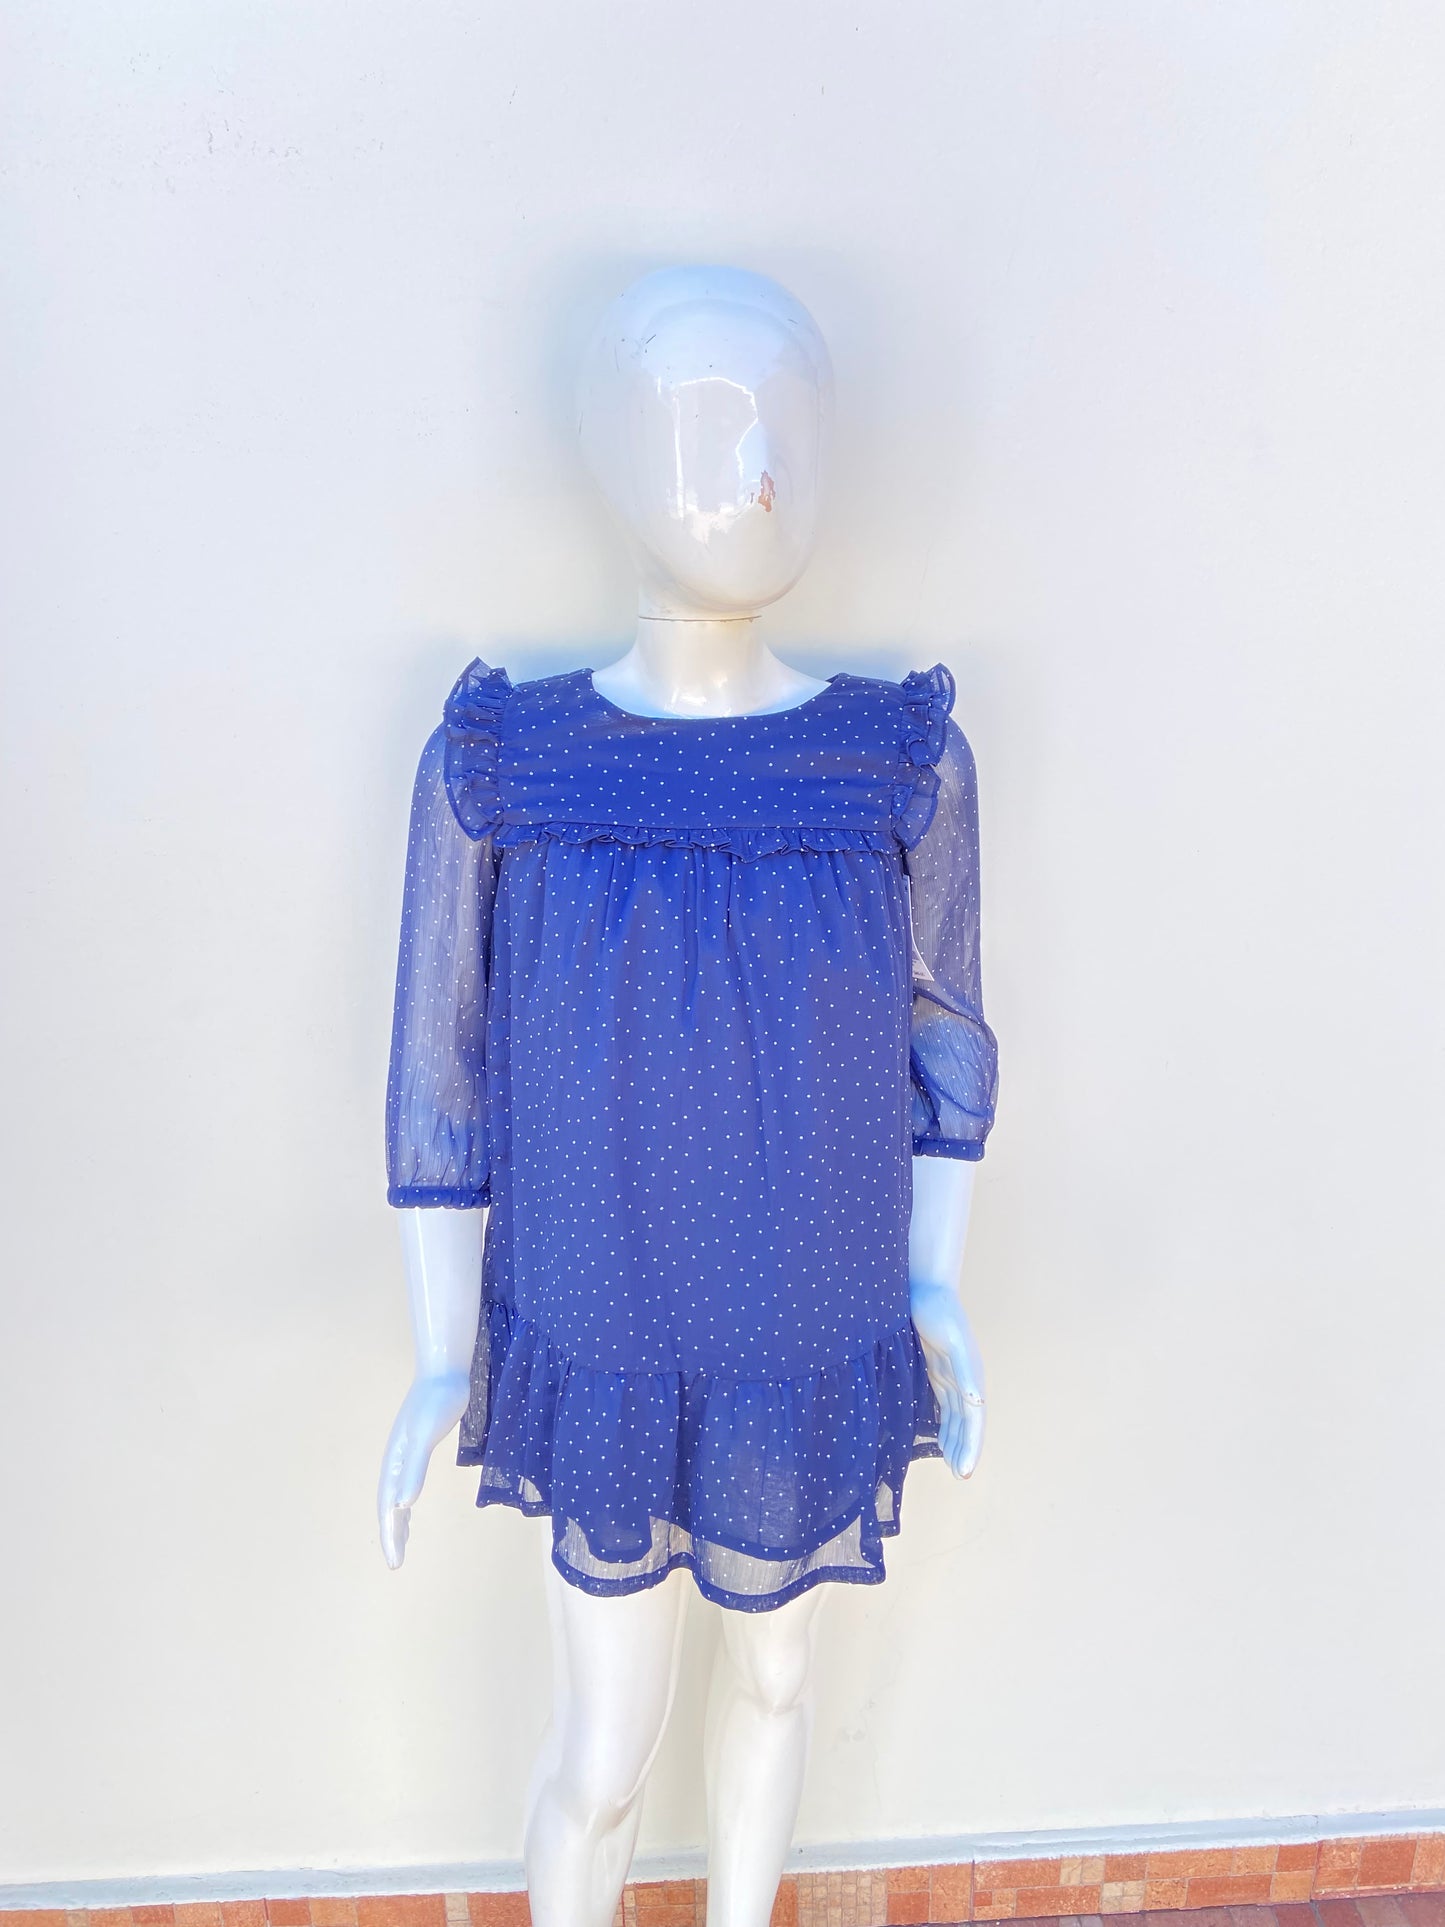 Vestido Oshkosh B’gosh original de color azul marino con diseño de puntos blancos mangas larga transparente pequeños vuelo en los hombros y al frente